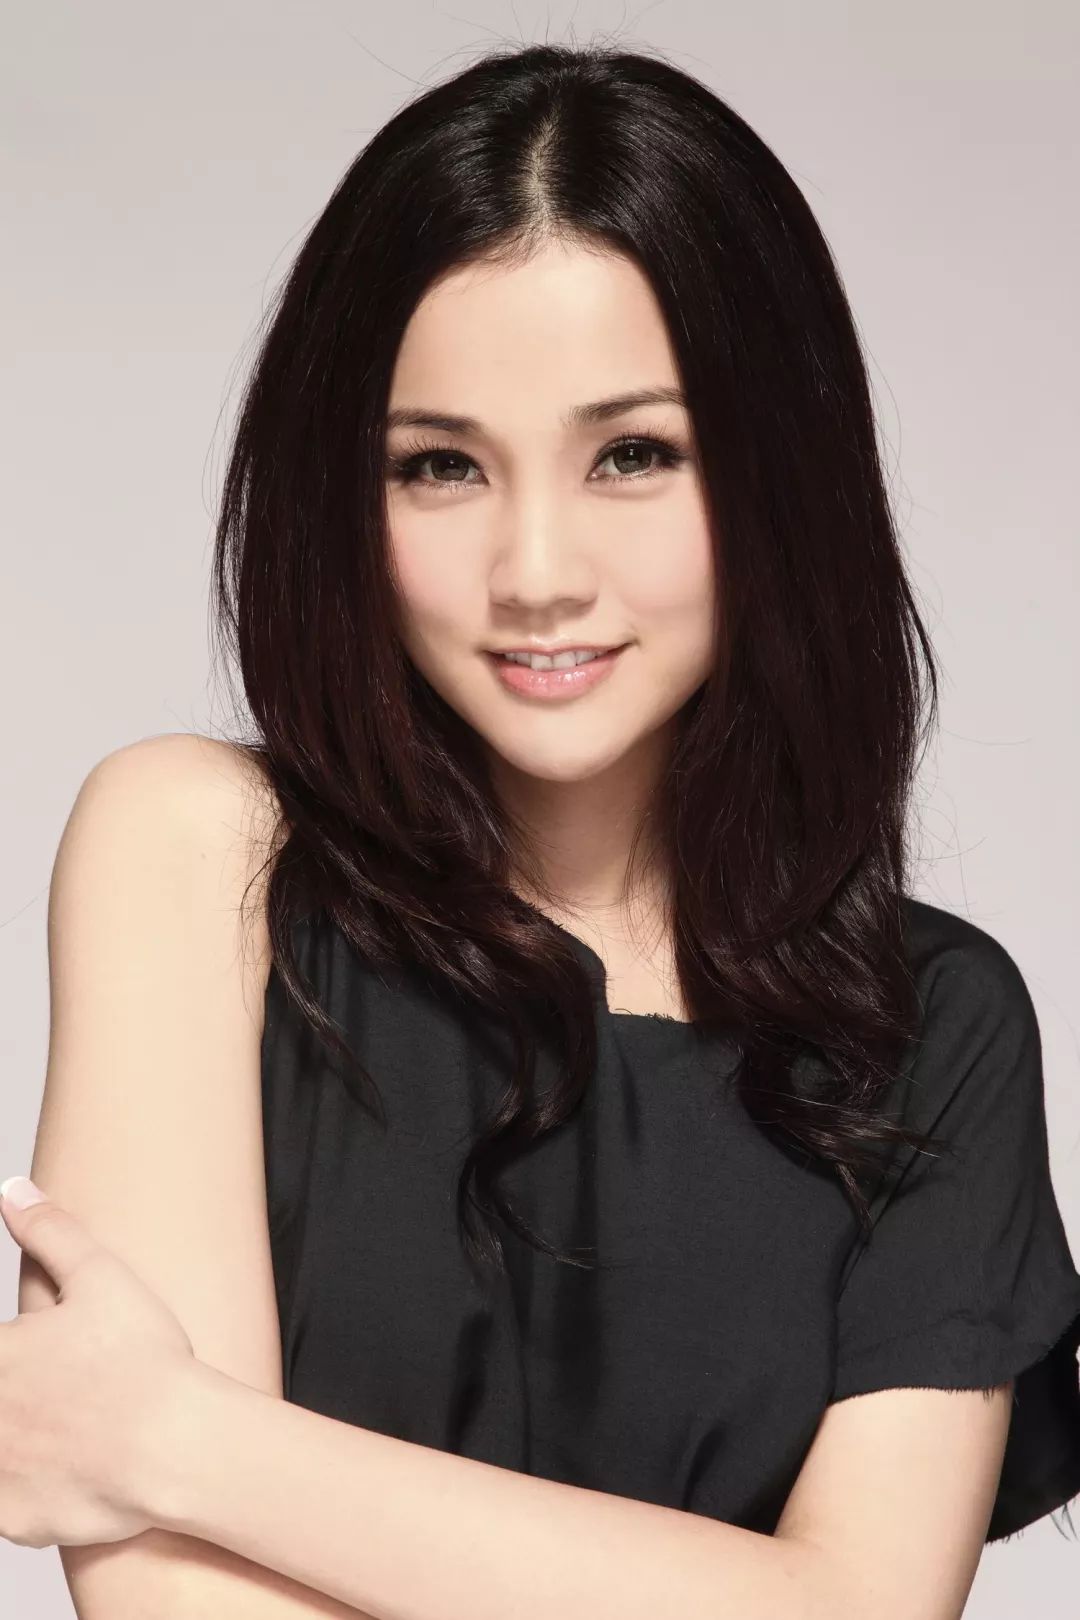 谢安琪,1977年出生于中国香港,中国香港女歌手,演员.